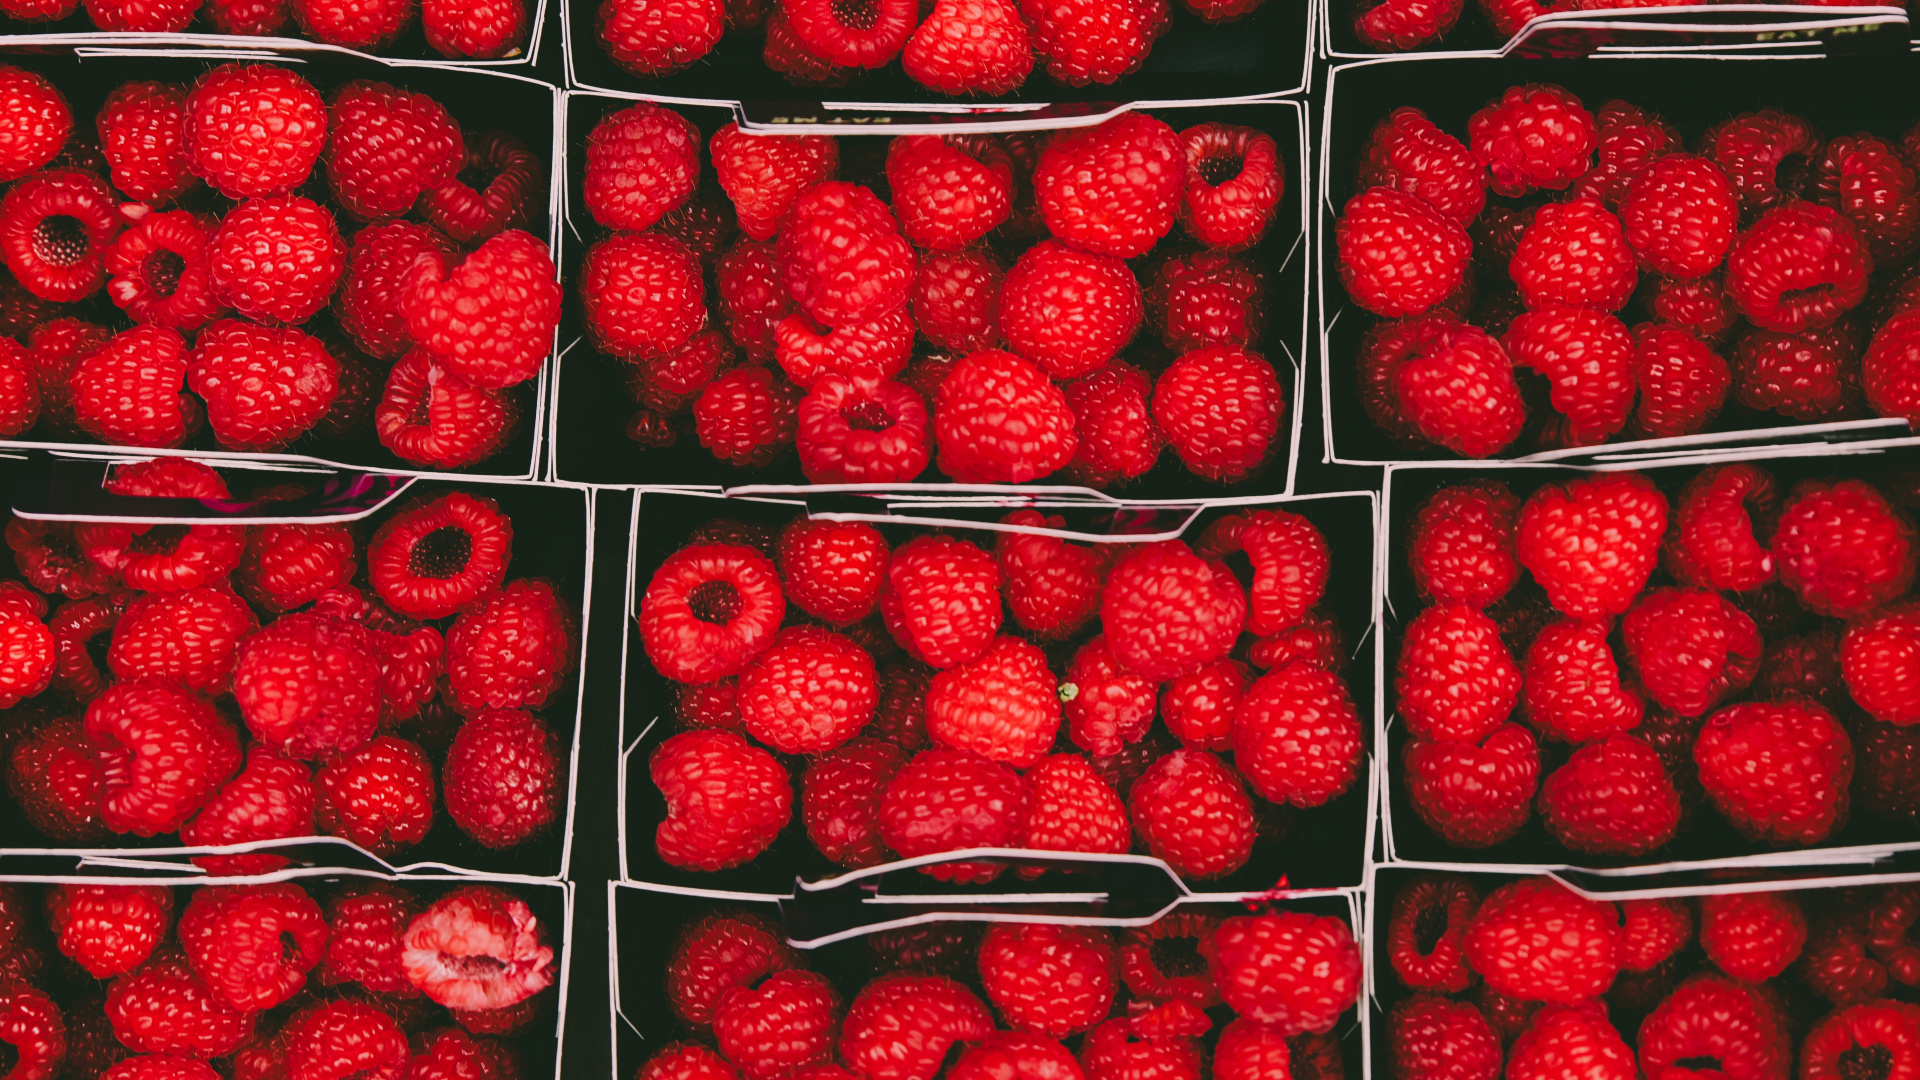 天然的食物, 当地的食物, 红色的, 无核果, 树莓 壁纸 1920x1080 允许